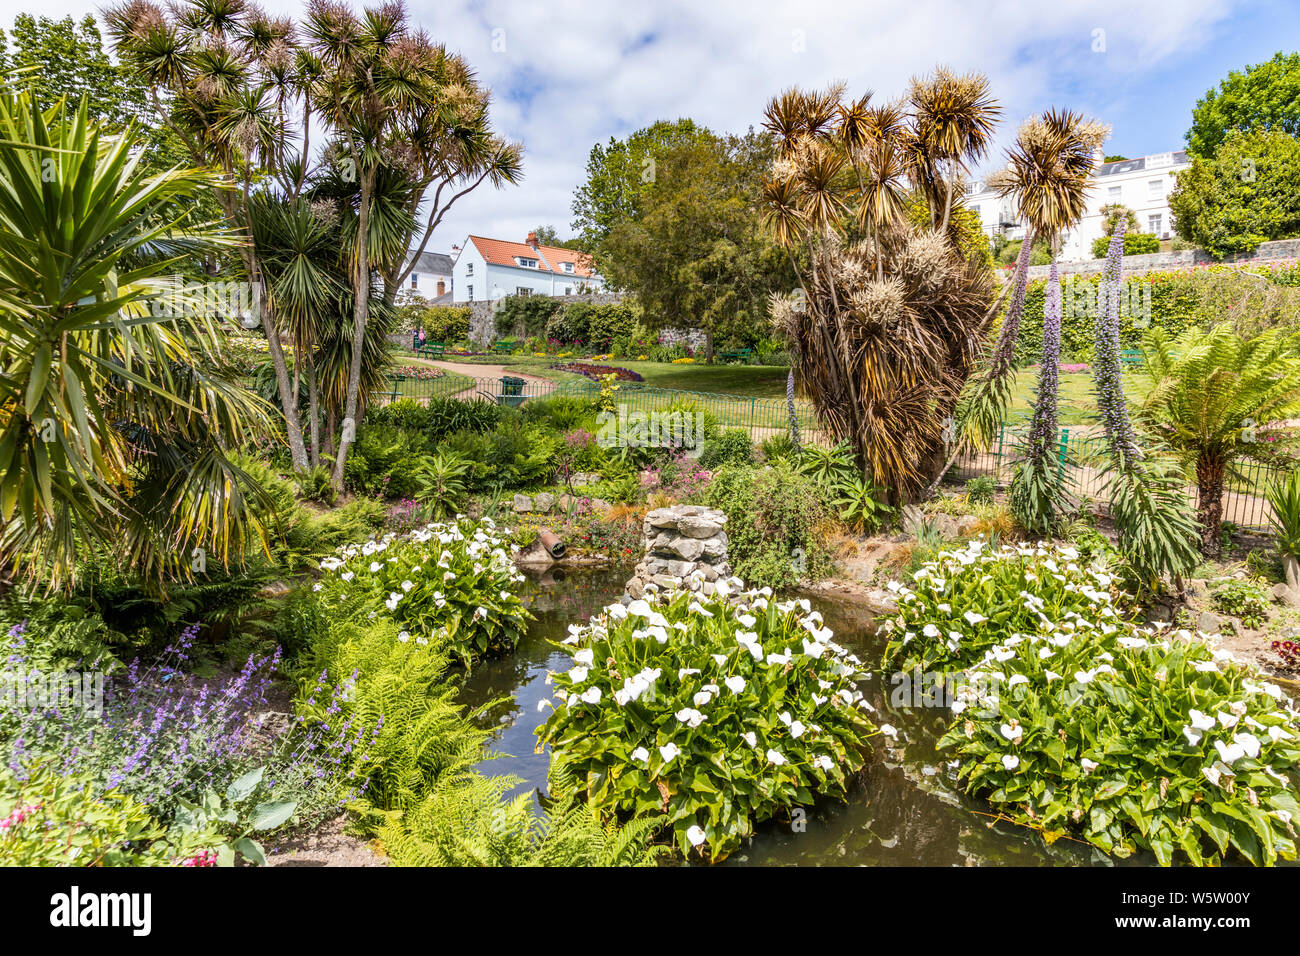 Candie Gardens, restaurata alla fine del XIX secolo i giardini, St Peter Port Guernsey, Isole del Canale della Manica UK Foto Stock